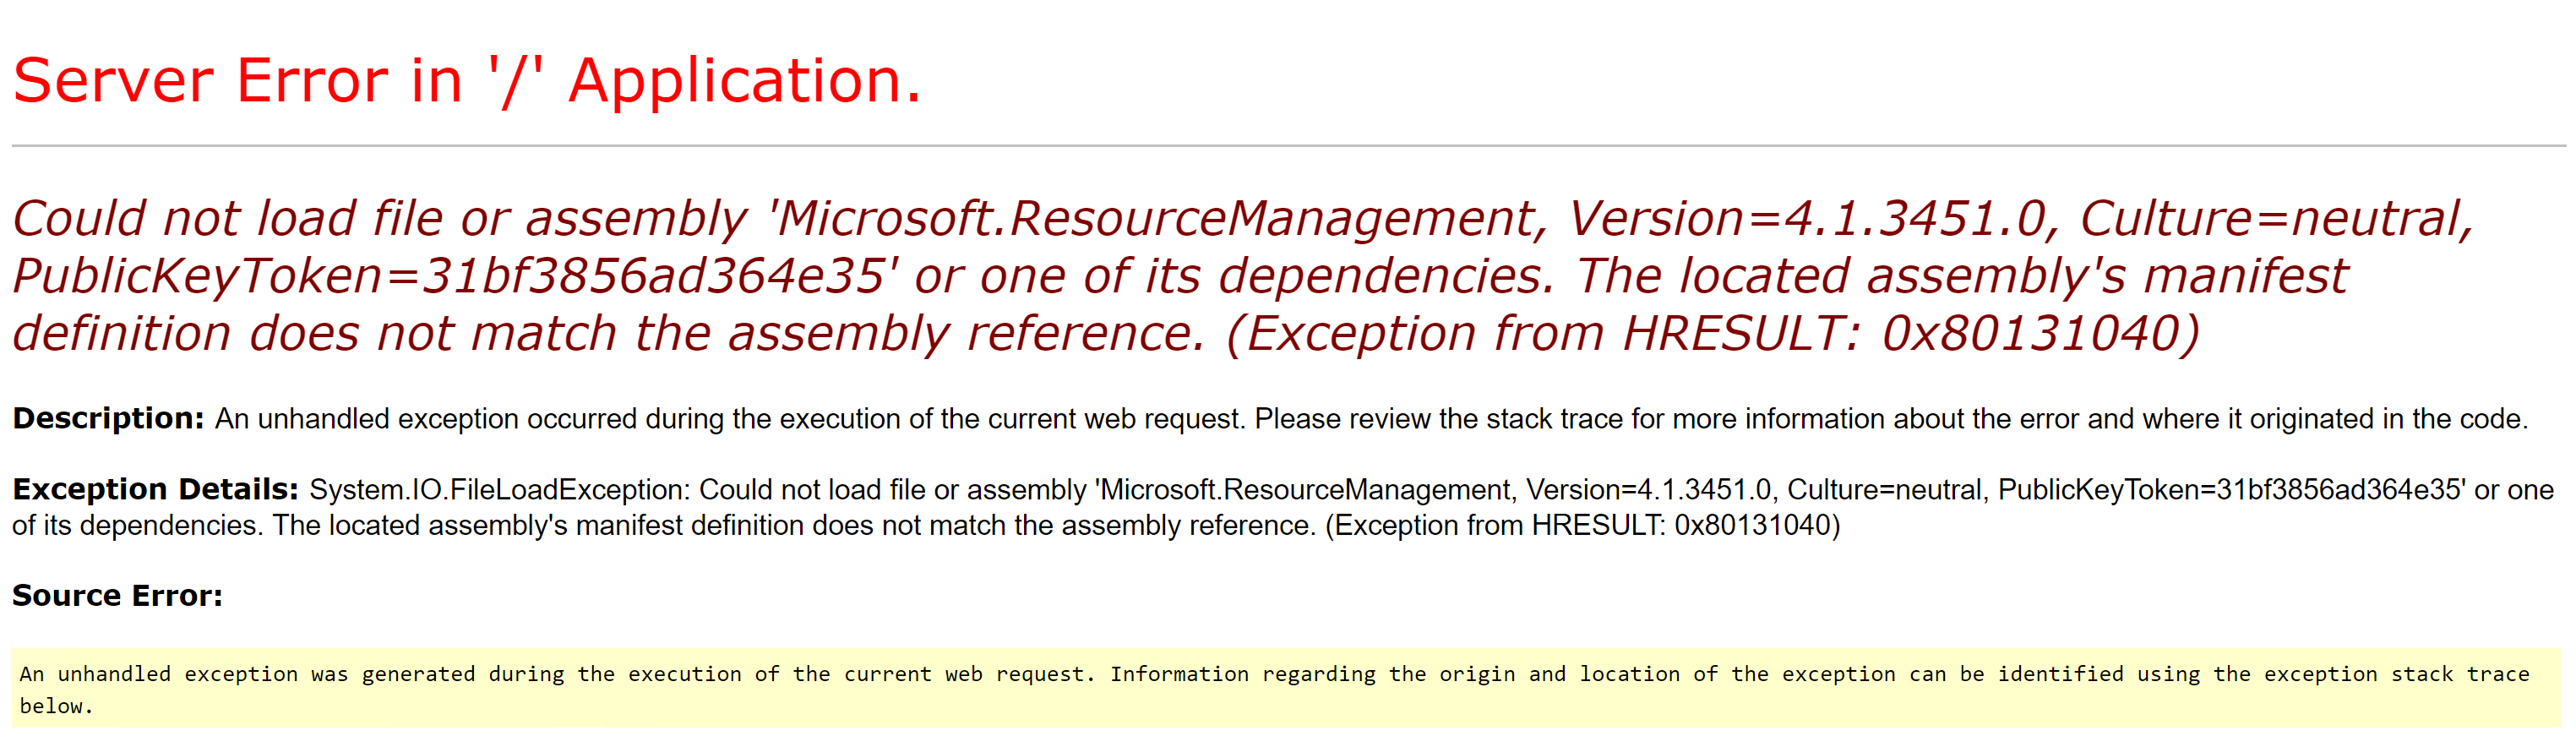 查找Microsoft.ResourceManagement dll.png时出错